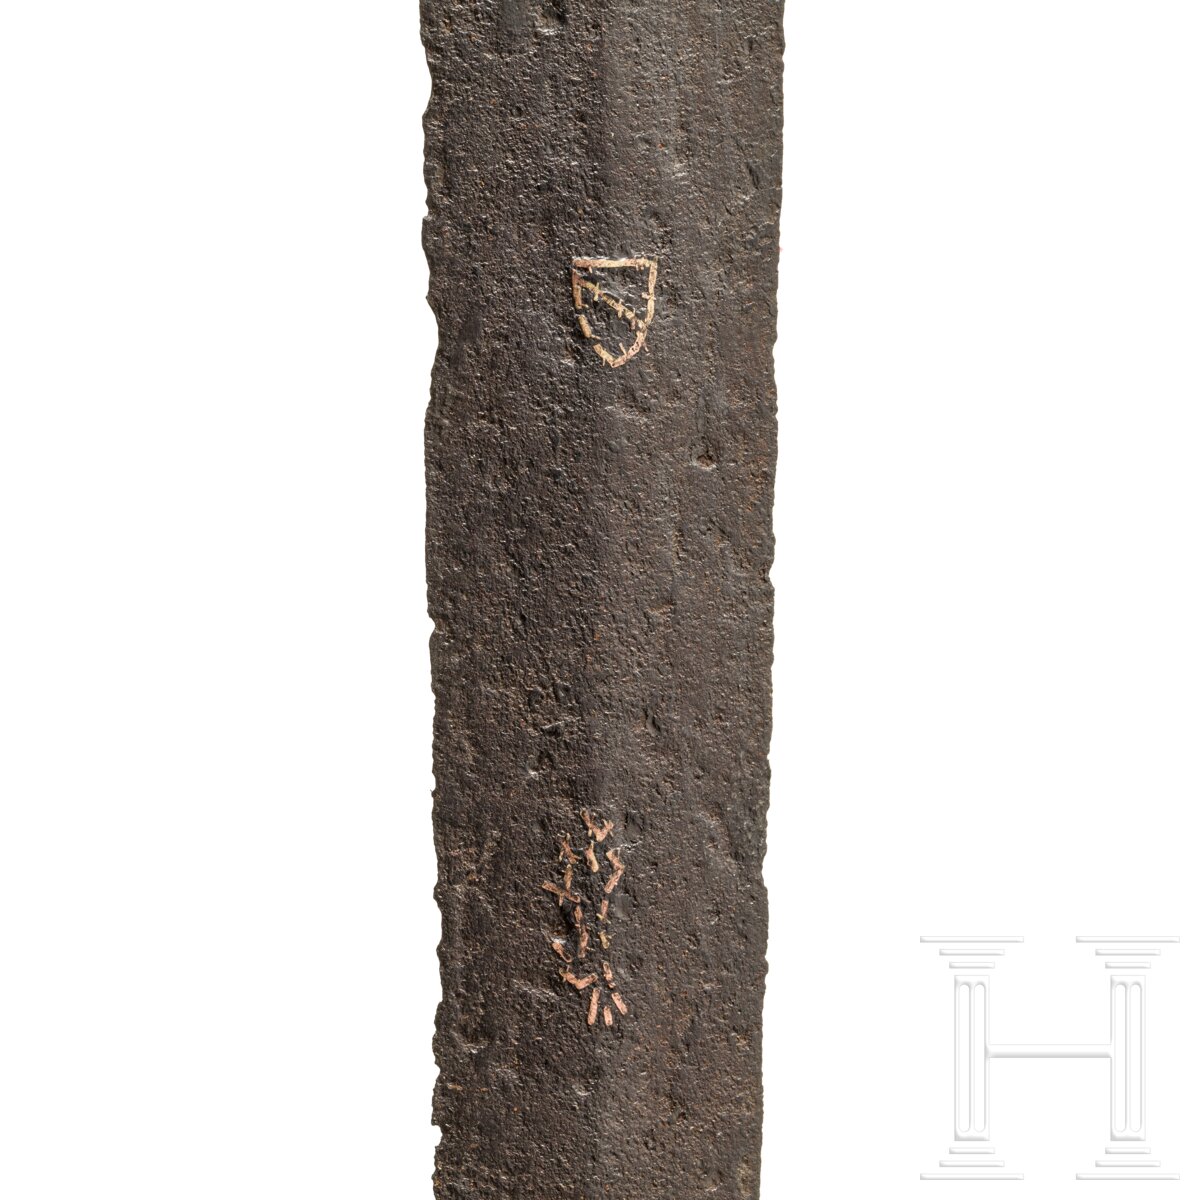 Ritterliches Schwert zu anderthalb Hand, Frankreich, um 1440/50 - Image 6 of 9